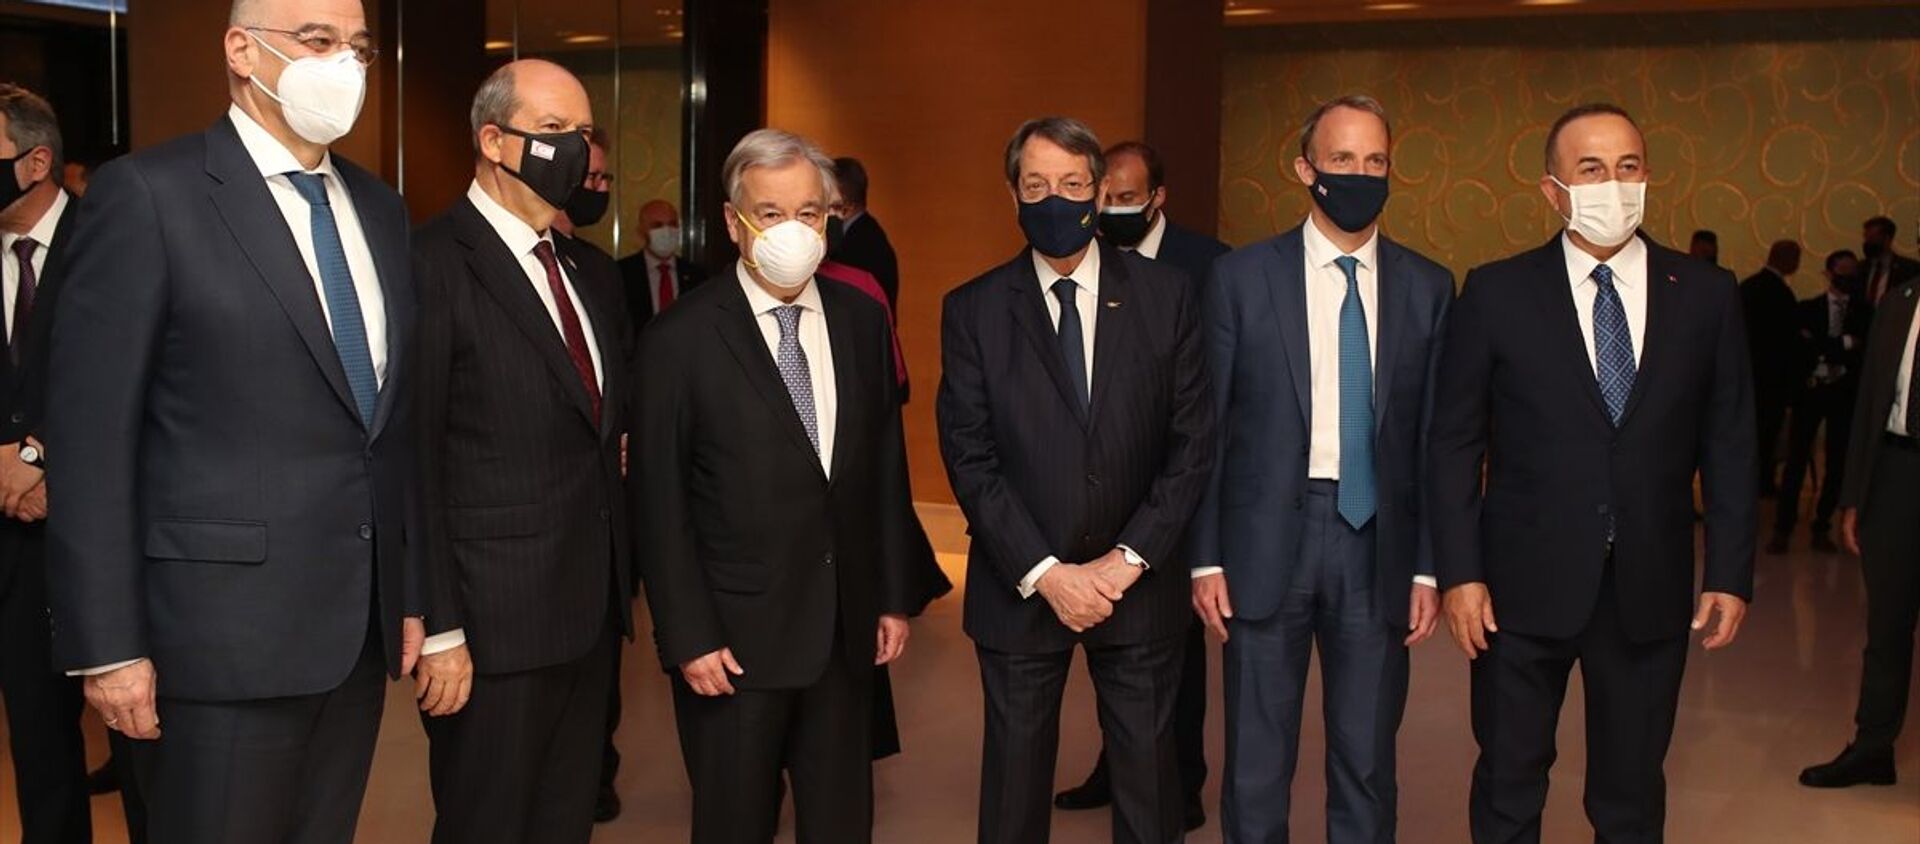 BM Genel Sekreteri Antonio Guterres, İsviçre’nin Cenevre kentinde düzenlenecek gayrıresmi Kıbrıs Konferansı öncesi taraflara resepsiyon verdi. Resepsiyona KKTC Cumhurbaşkanı Ersin Tatar (sol 2), Dışişleri Bakanı Mevlüt Çavuşoğlu (sağda), BM Genel Sekreteri Antonio Guterres (sol 3), İngiltere Dışişleri Bakanı Dominic Raab (sağ 2), Yunanistan Dışişleri Bakanı Nikos Dendias (solda)ve Kıbrıs Rum Kesimi Lideri Nikos Anastasiadis (sağ 3) katıldı. - Sputnik Türkiye, 1920, 28.04.2021